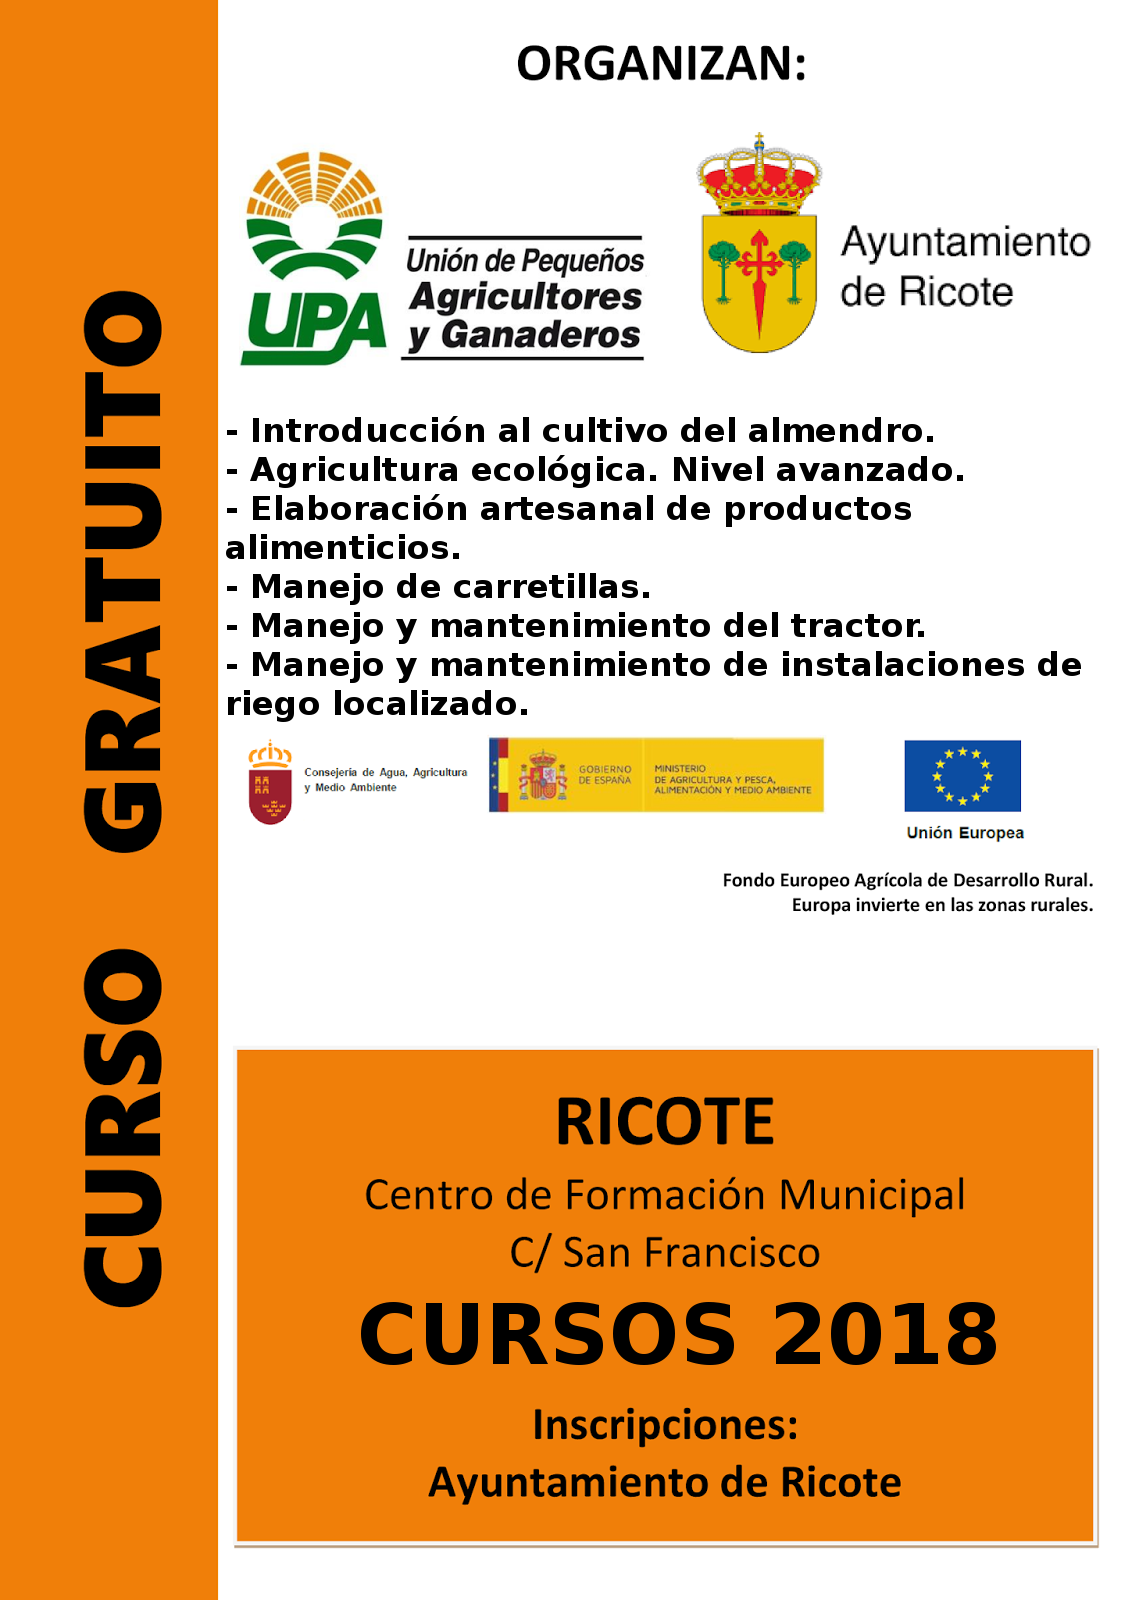 Cursos de formación agraria para 2018 | Ayuntamiento Ricote